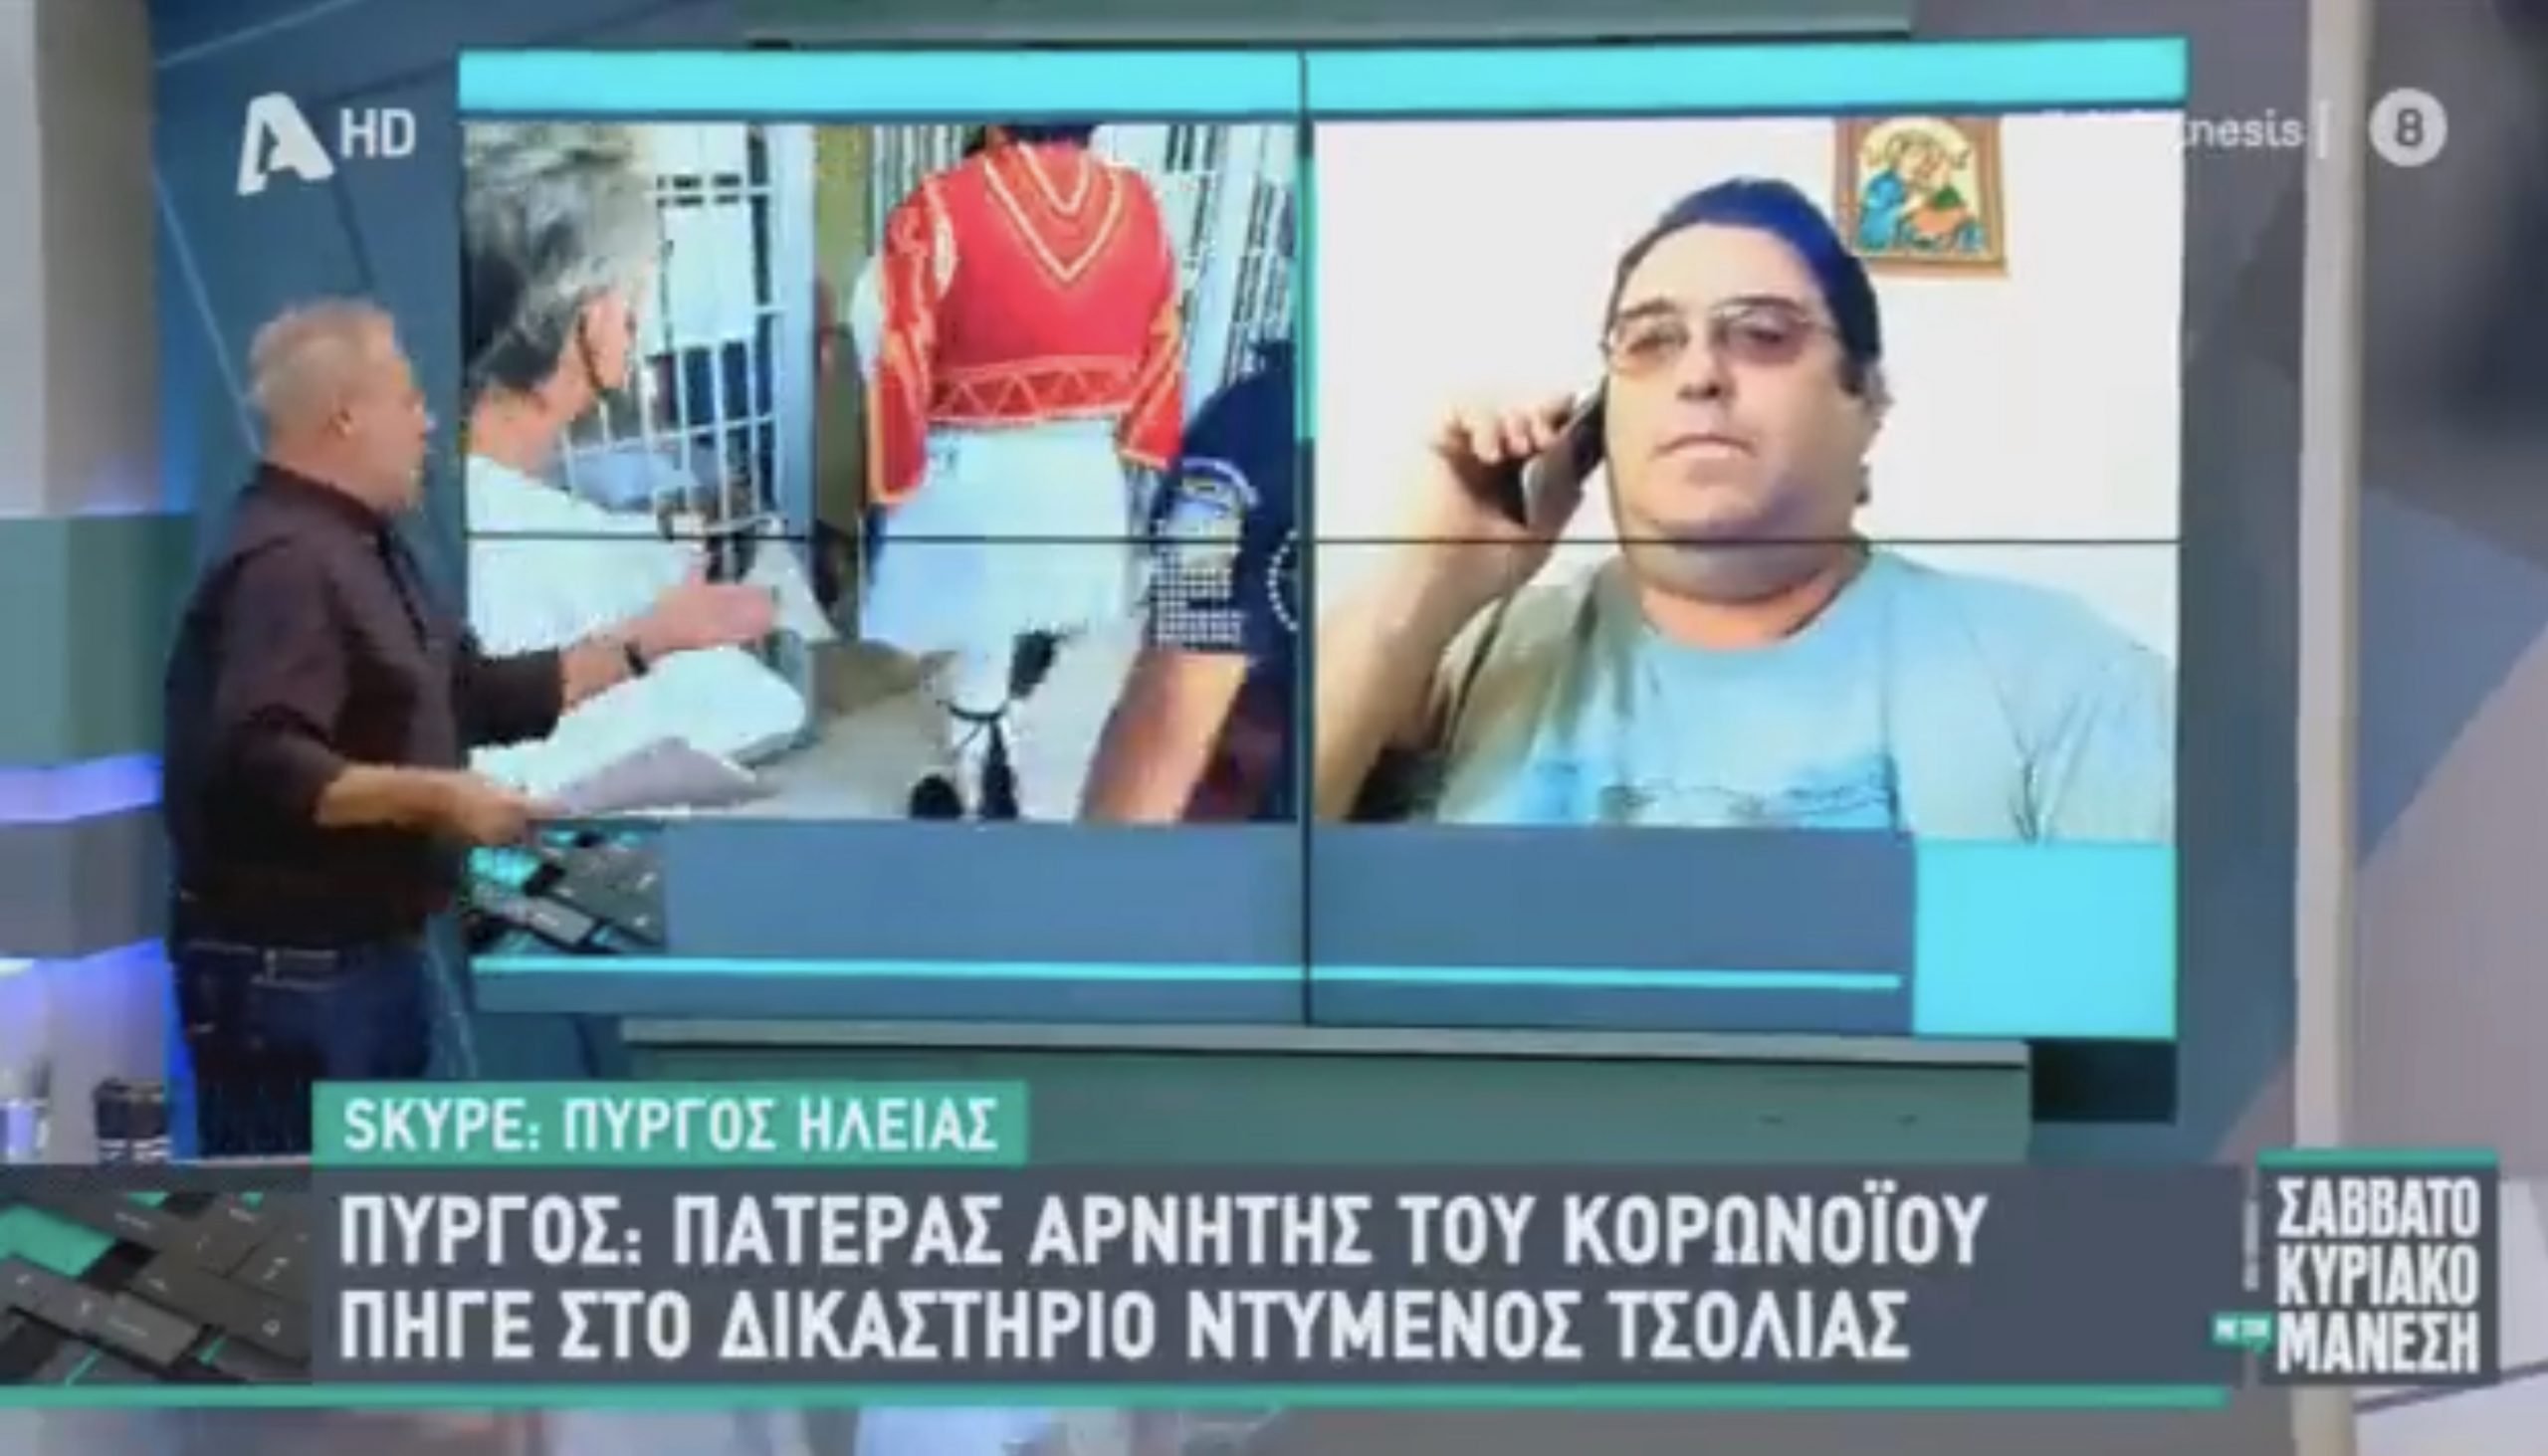 Πατέρας «τσολιάς»: «Ψήφισα Κ.Μητσοτάκη για να φύγει ο Α.Τσίπρας που ψήφισε τις Πρέσπες» (βίντεο)